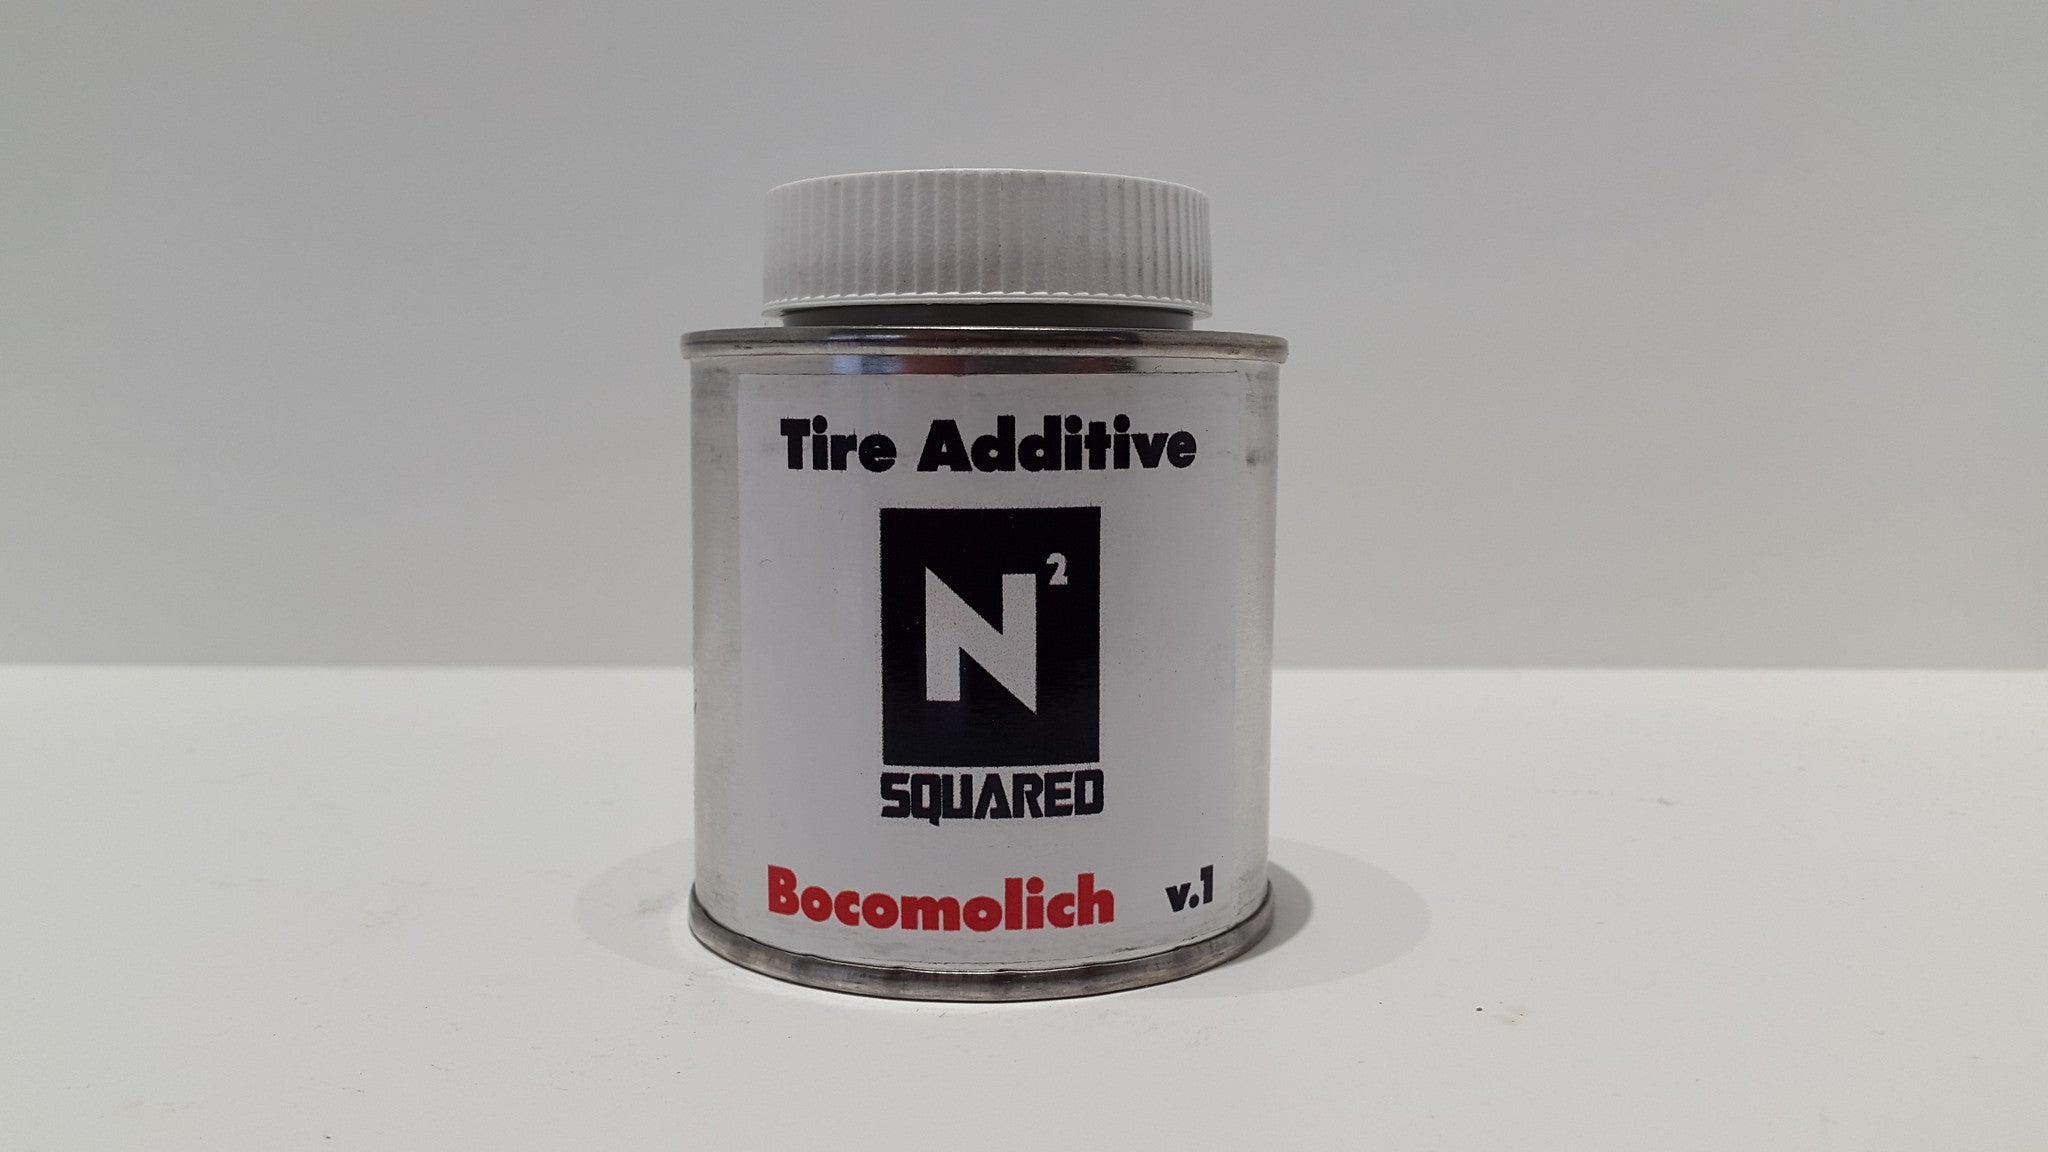 Tyre additive Bocomolich v1 - RACERC